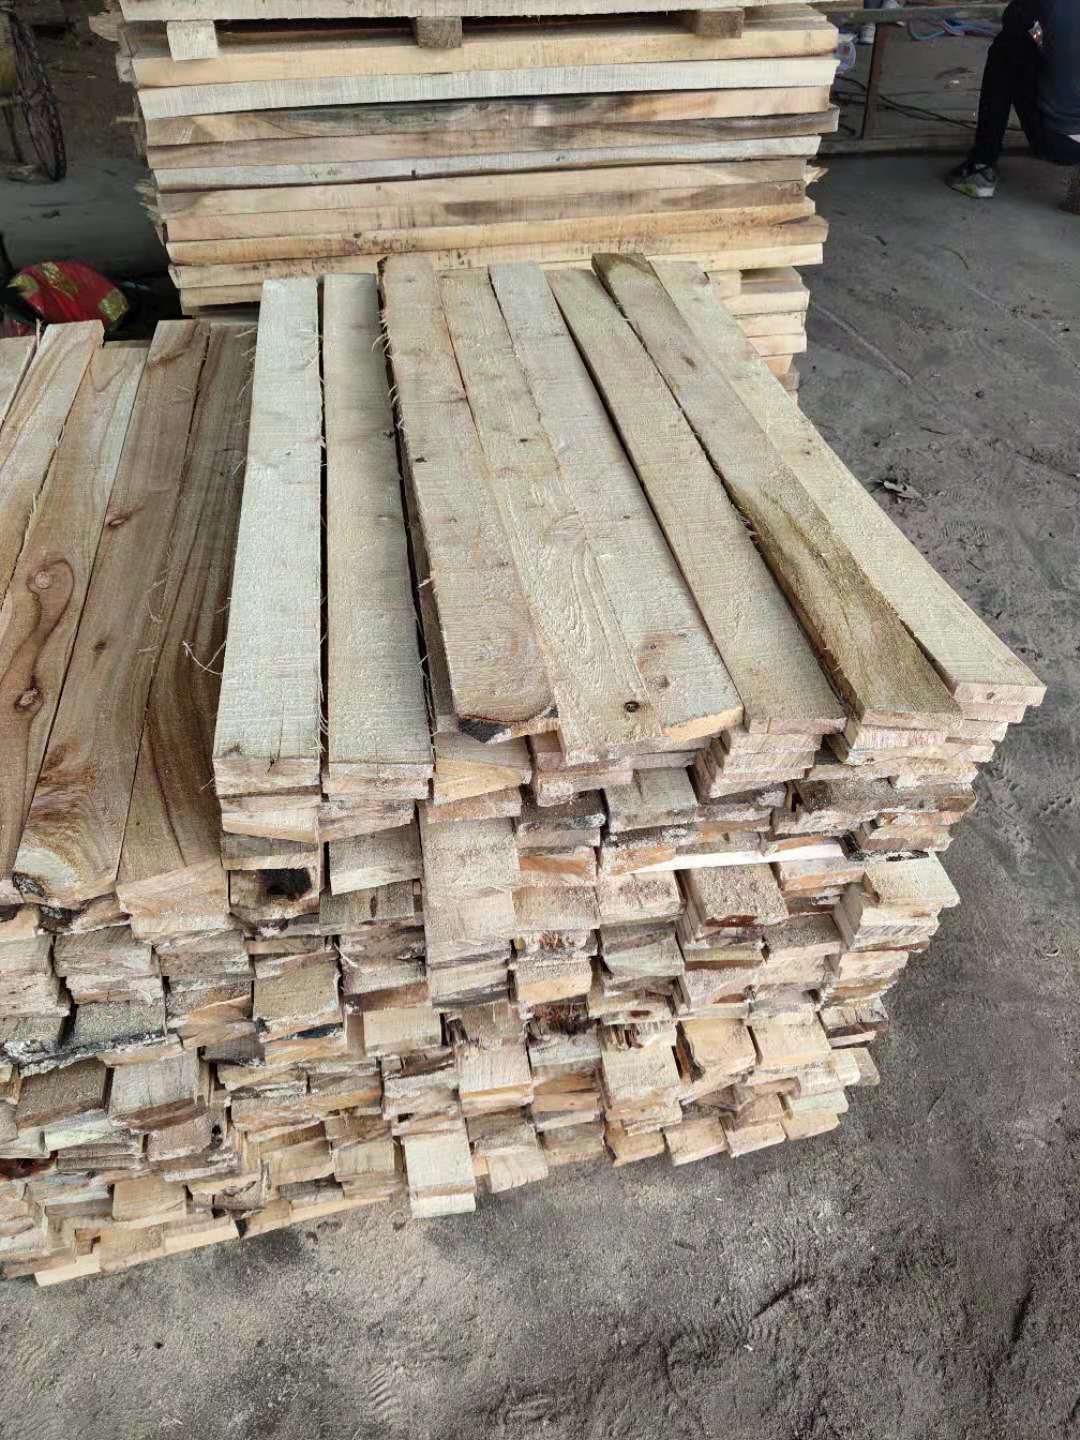 佛山出售木方条 佛山木方条出售 木方条批发价格 木方条厂家图片